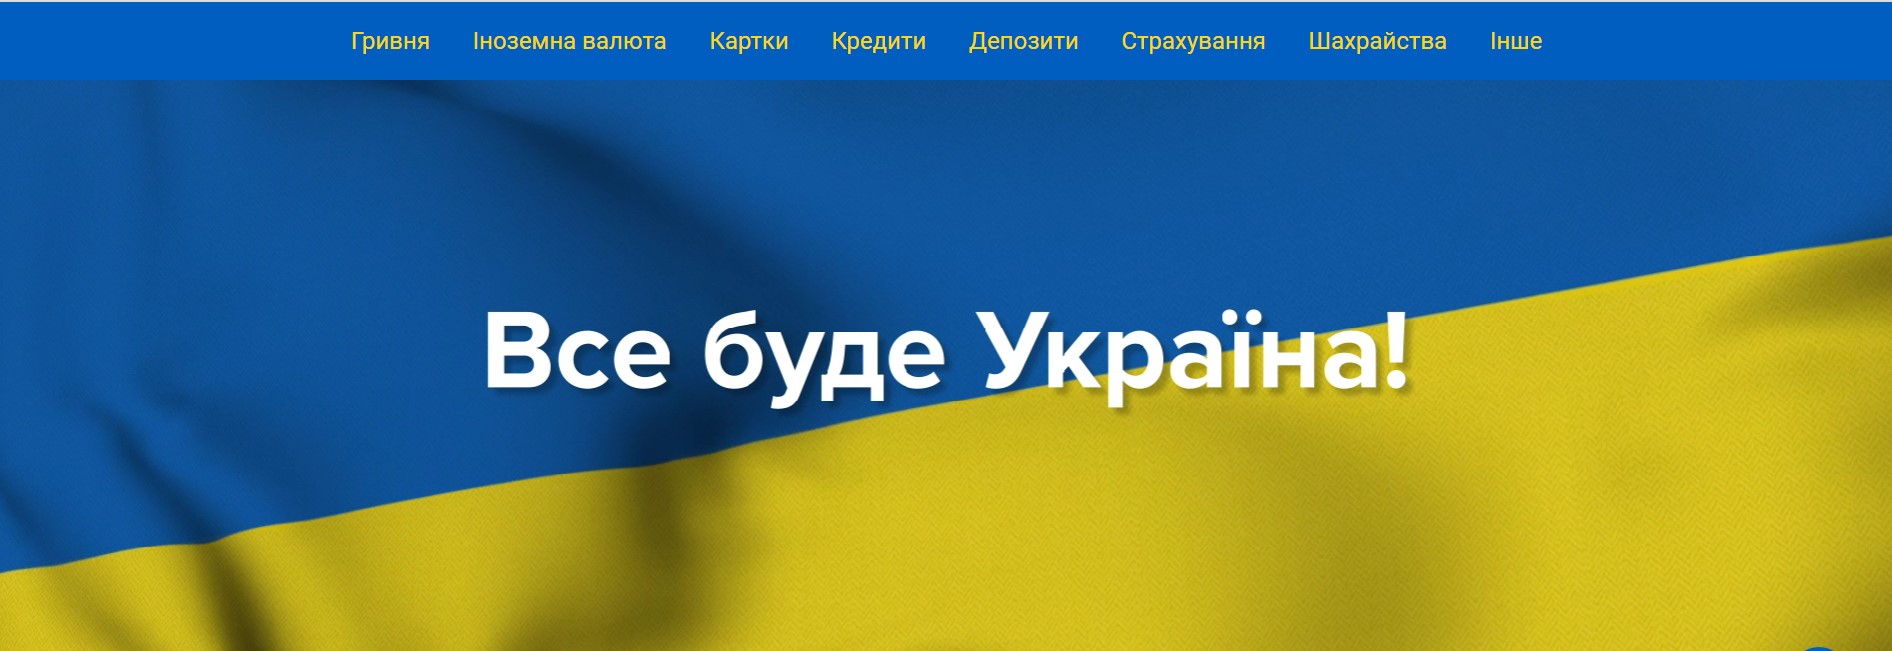 НБУ представил сайт «Финансовая оборона Украины»